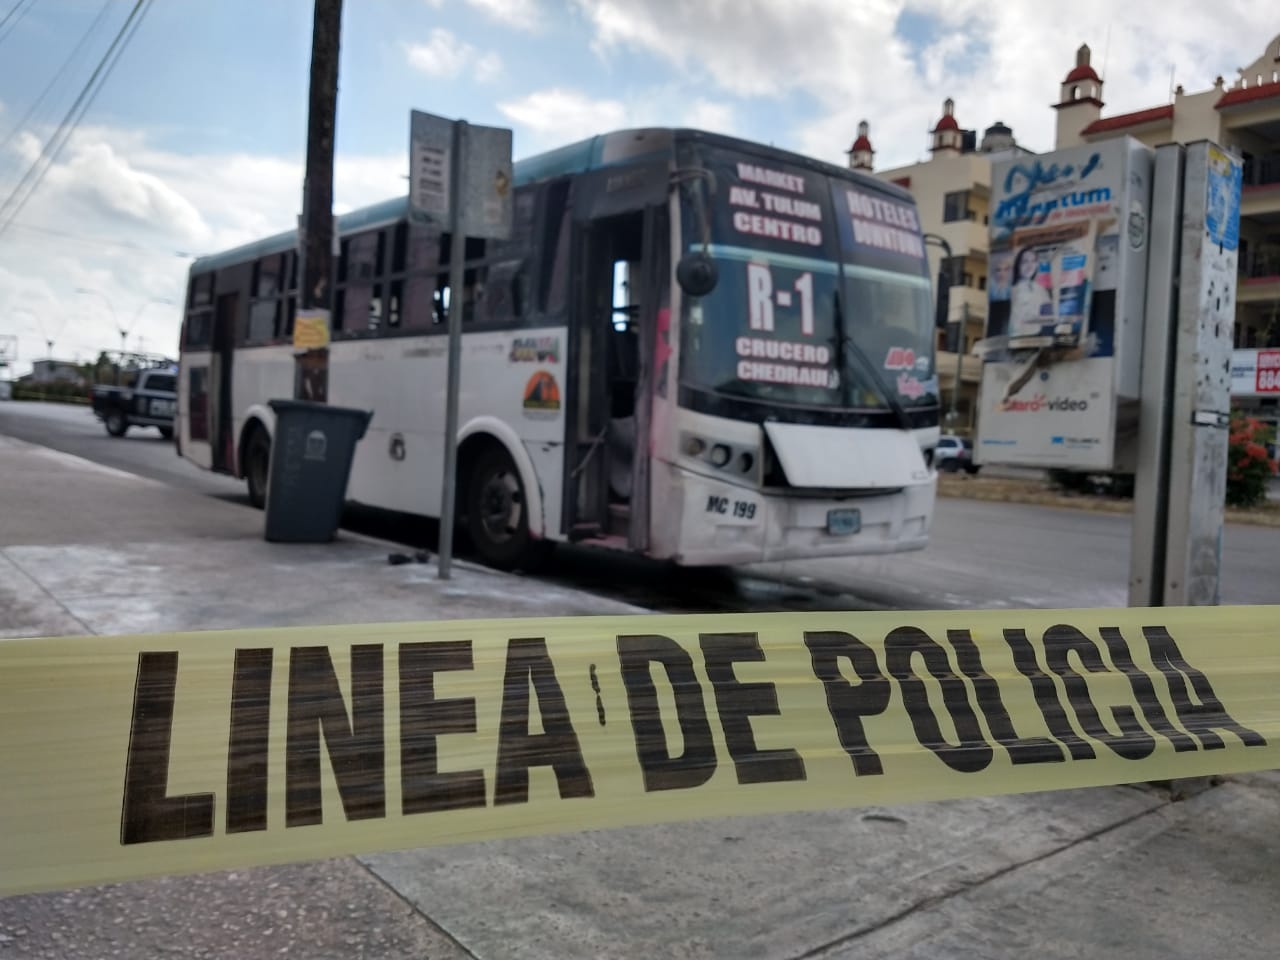 Lanzan bombas molotov contra un autobús de transporte público en Cancún: EN VIVO